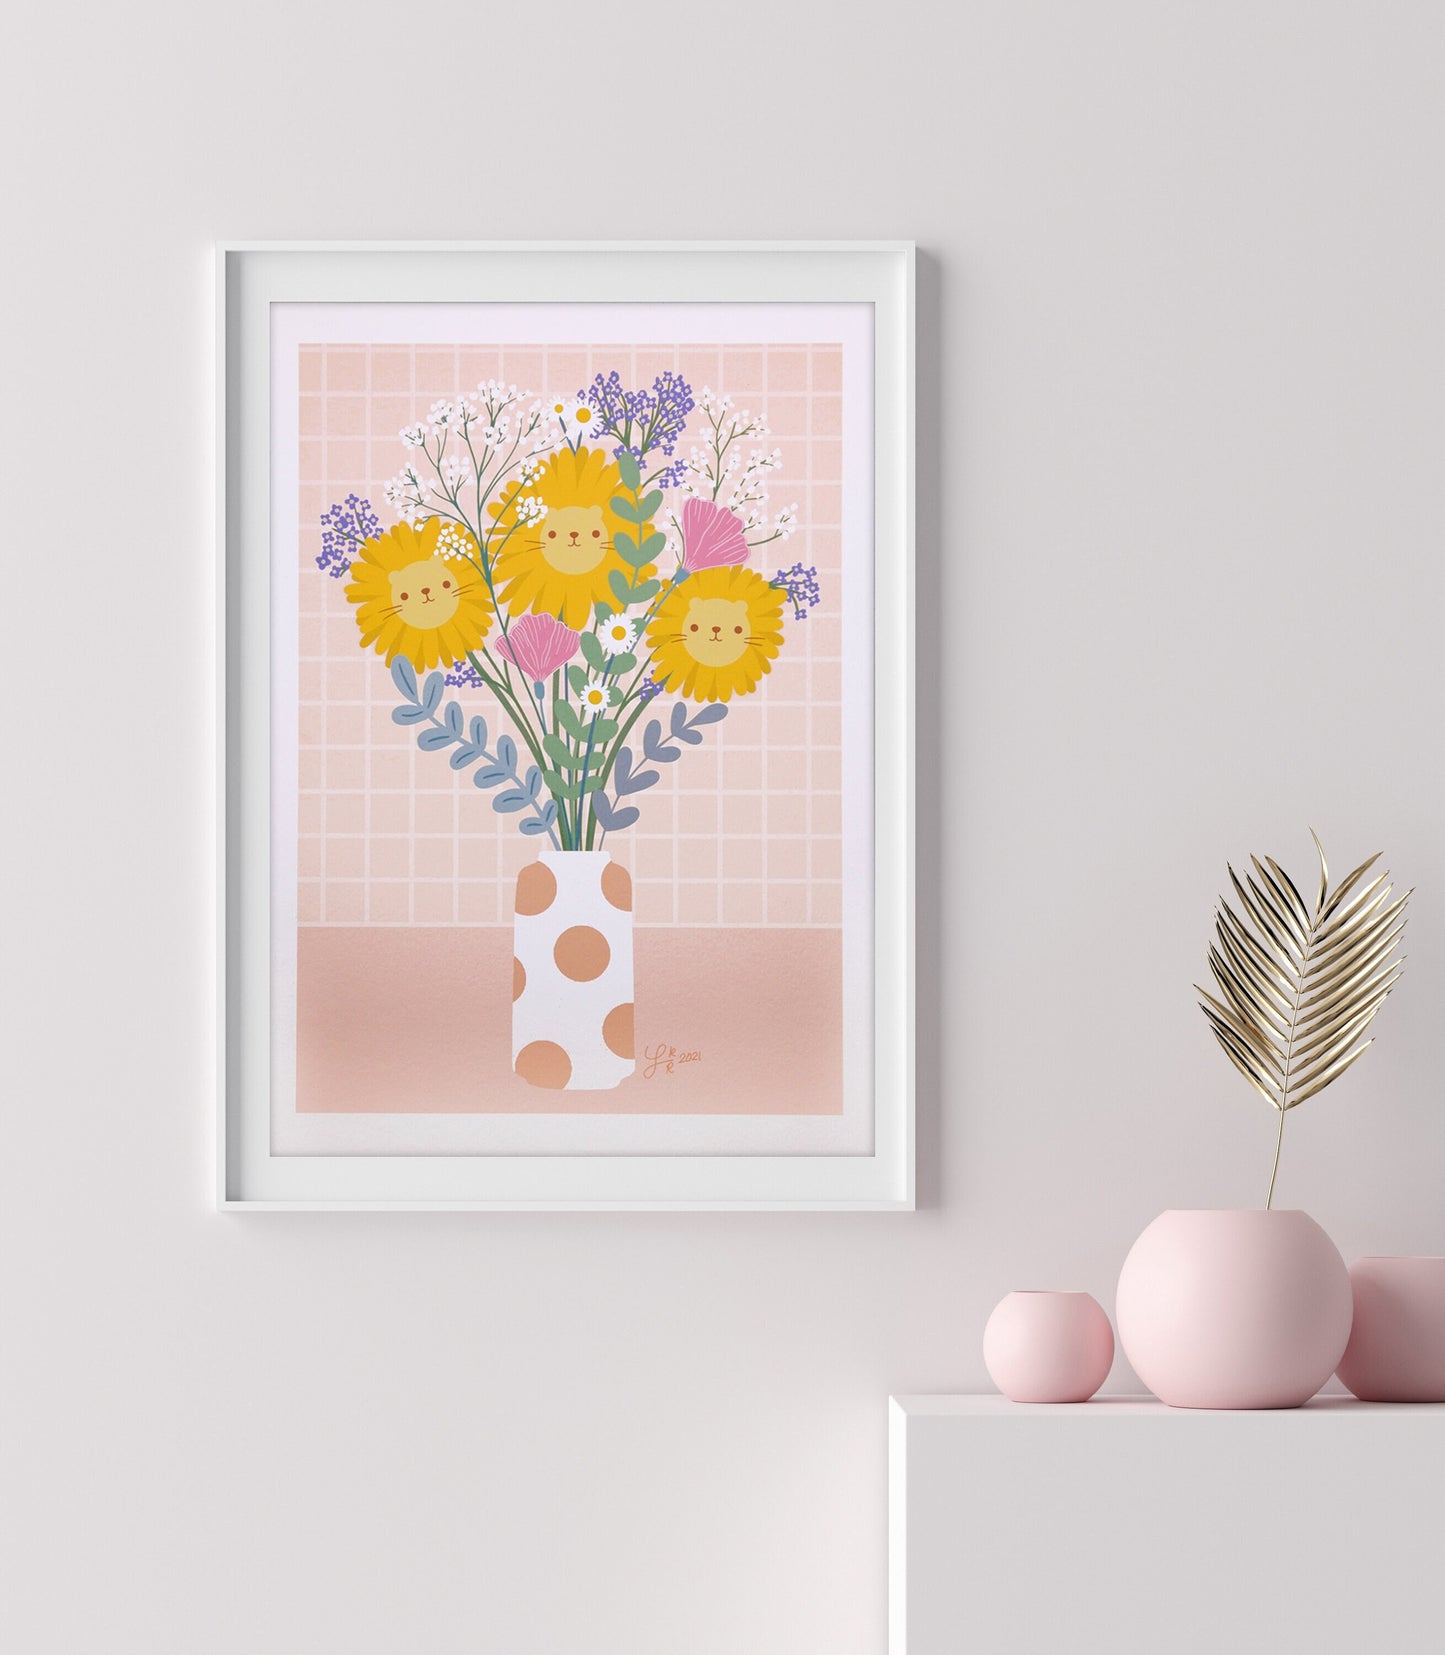 Floral sunflowers lions bouquet in vase cute art print